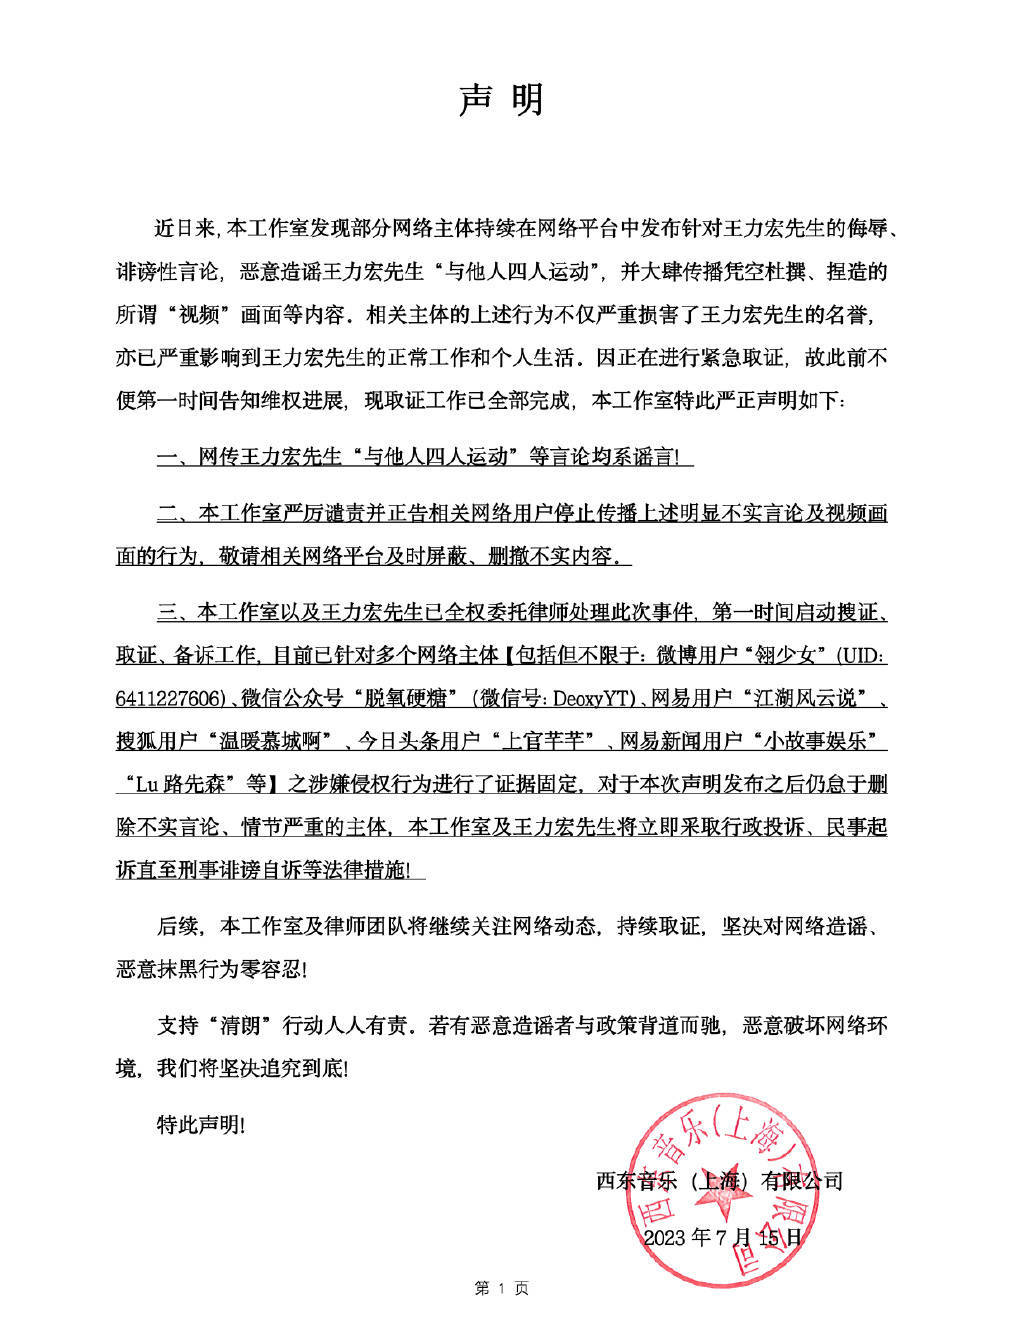 王力宏工作室发表声明 坚决对网络造谣 恶意抹黑行为零容忍